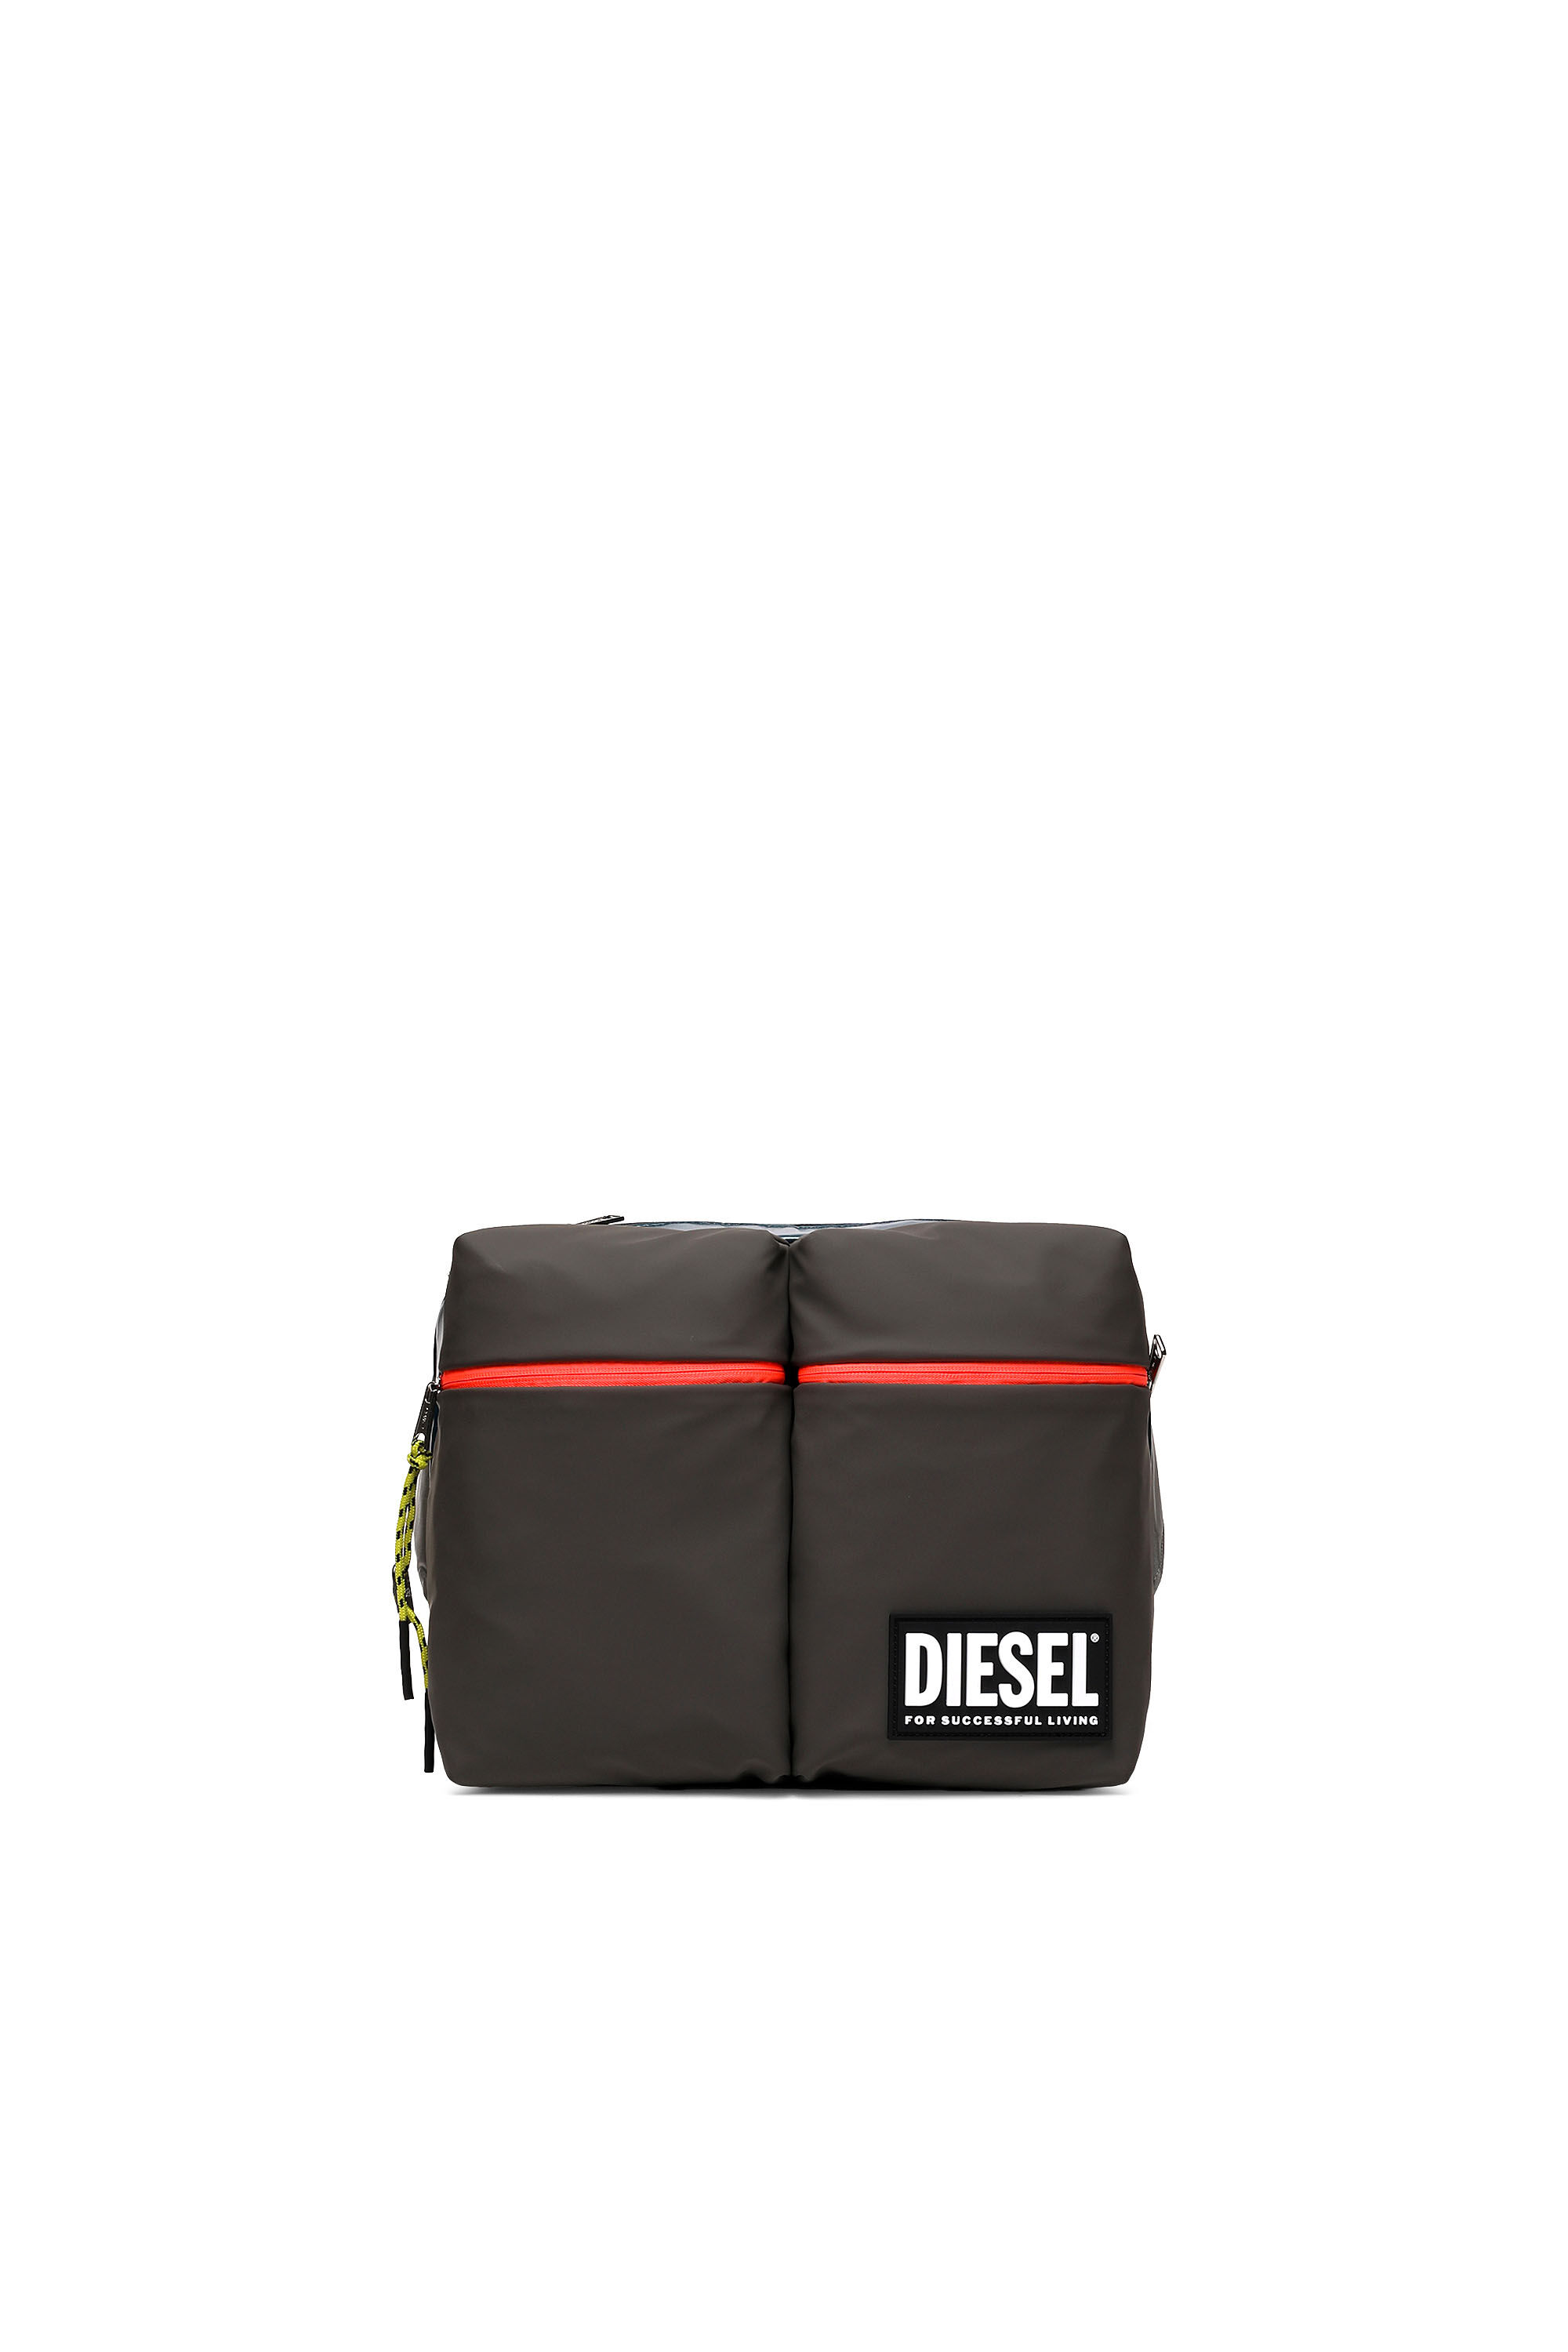 Diesel - CROSYO, Multicolor/Black - Image 2